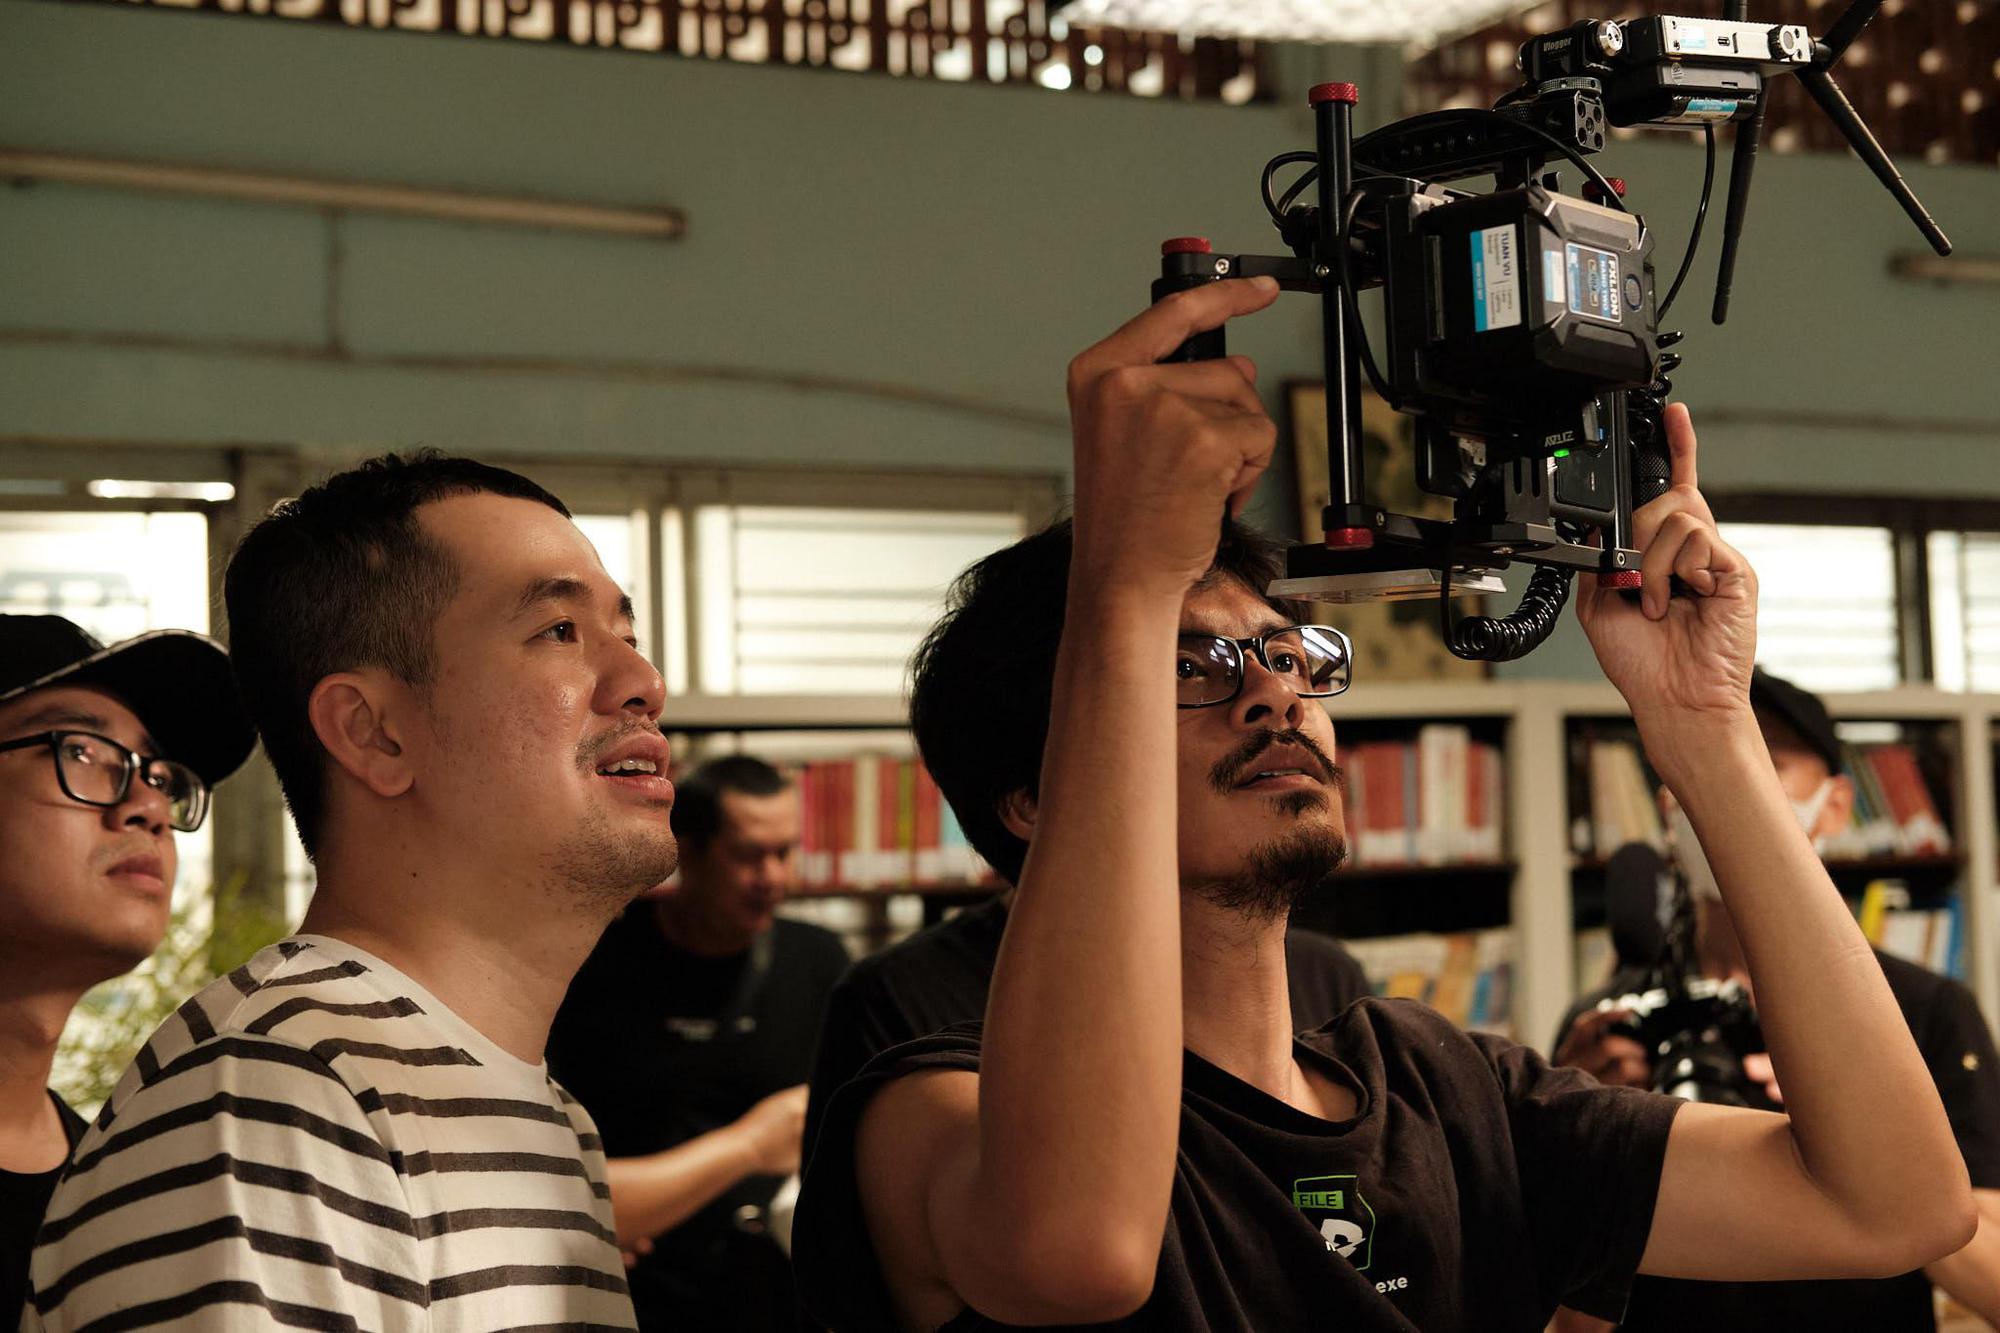 Lần đầu tiên một bộ phim Việt Nam chuyển thể từ tác phẩm nổi tiếng sẽ được quay hoàn toàn bằng điện thoại - Ảnh 5.